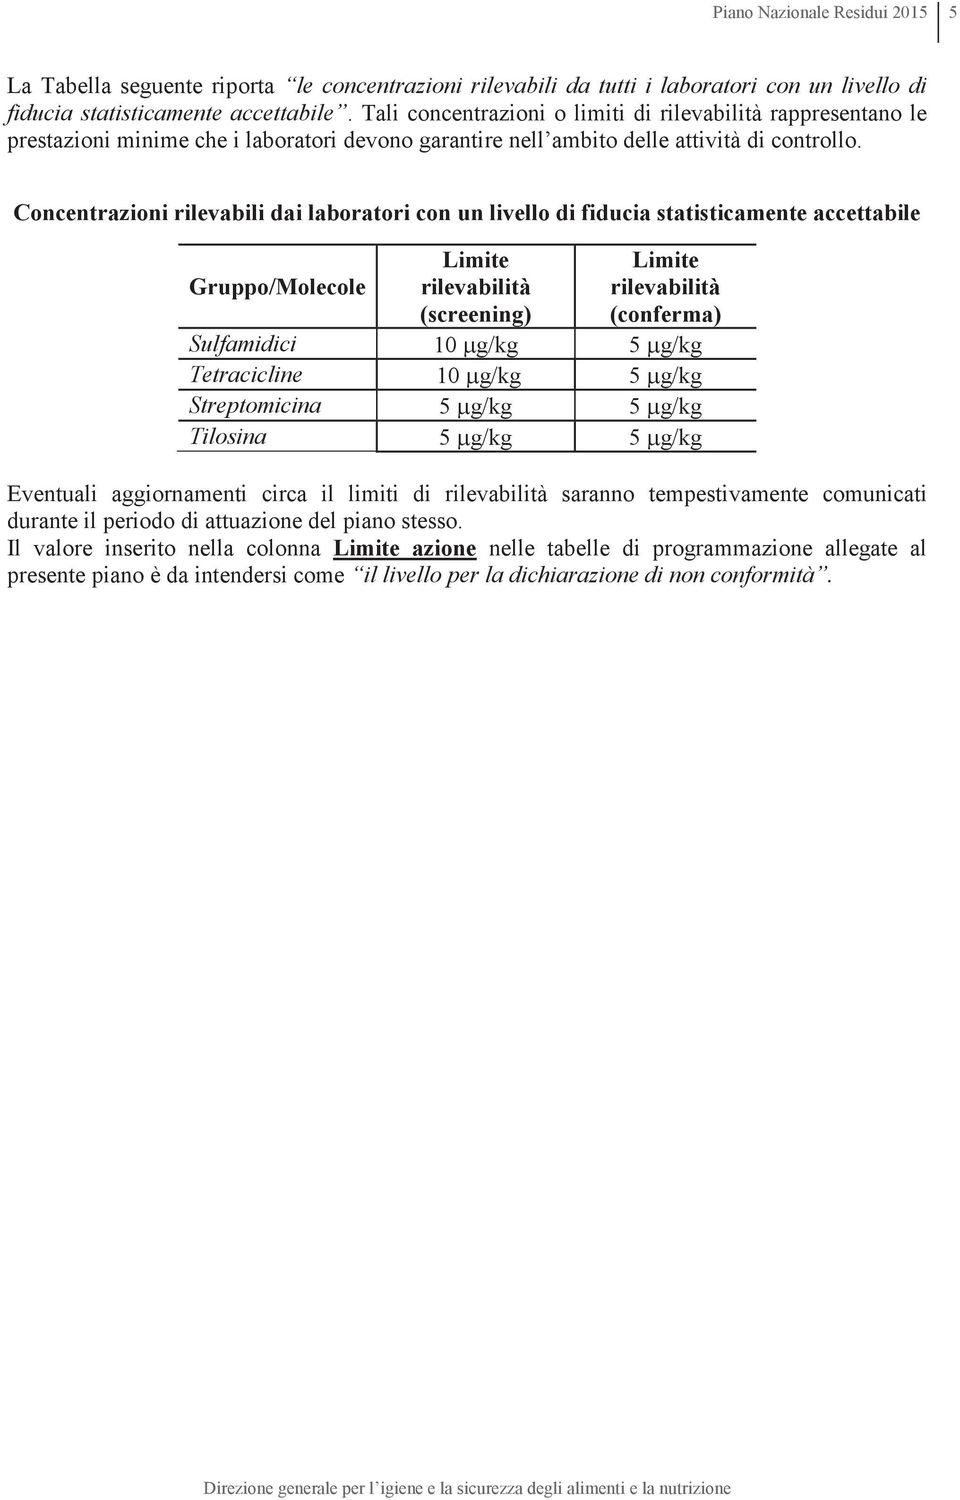 Concentrazioni rilevabili dai laboratori con un livello di fiducia statisticamente accettabile Gruppo/Molecole Limite rilevabilità (screening) Limite rilevabilità (conferma) Sulfamidici 10 mg/kg 5